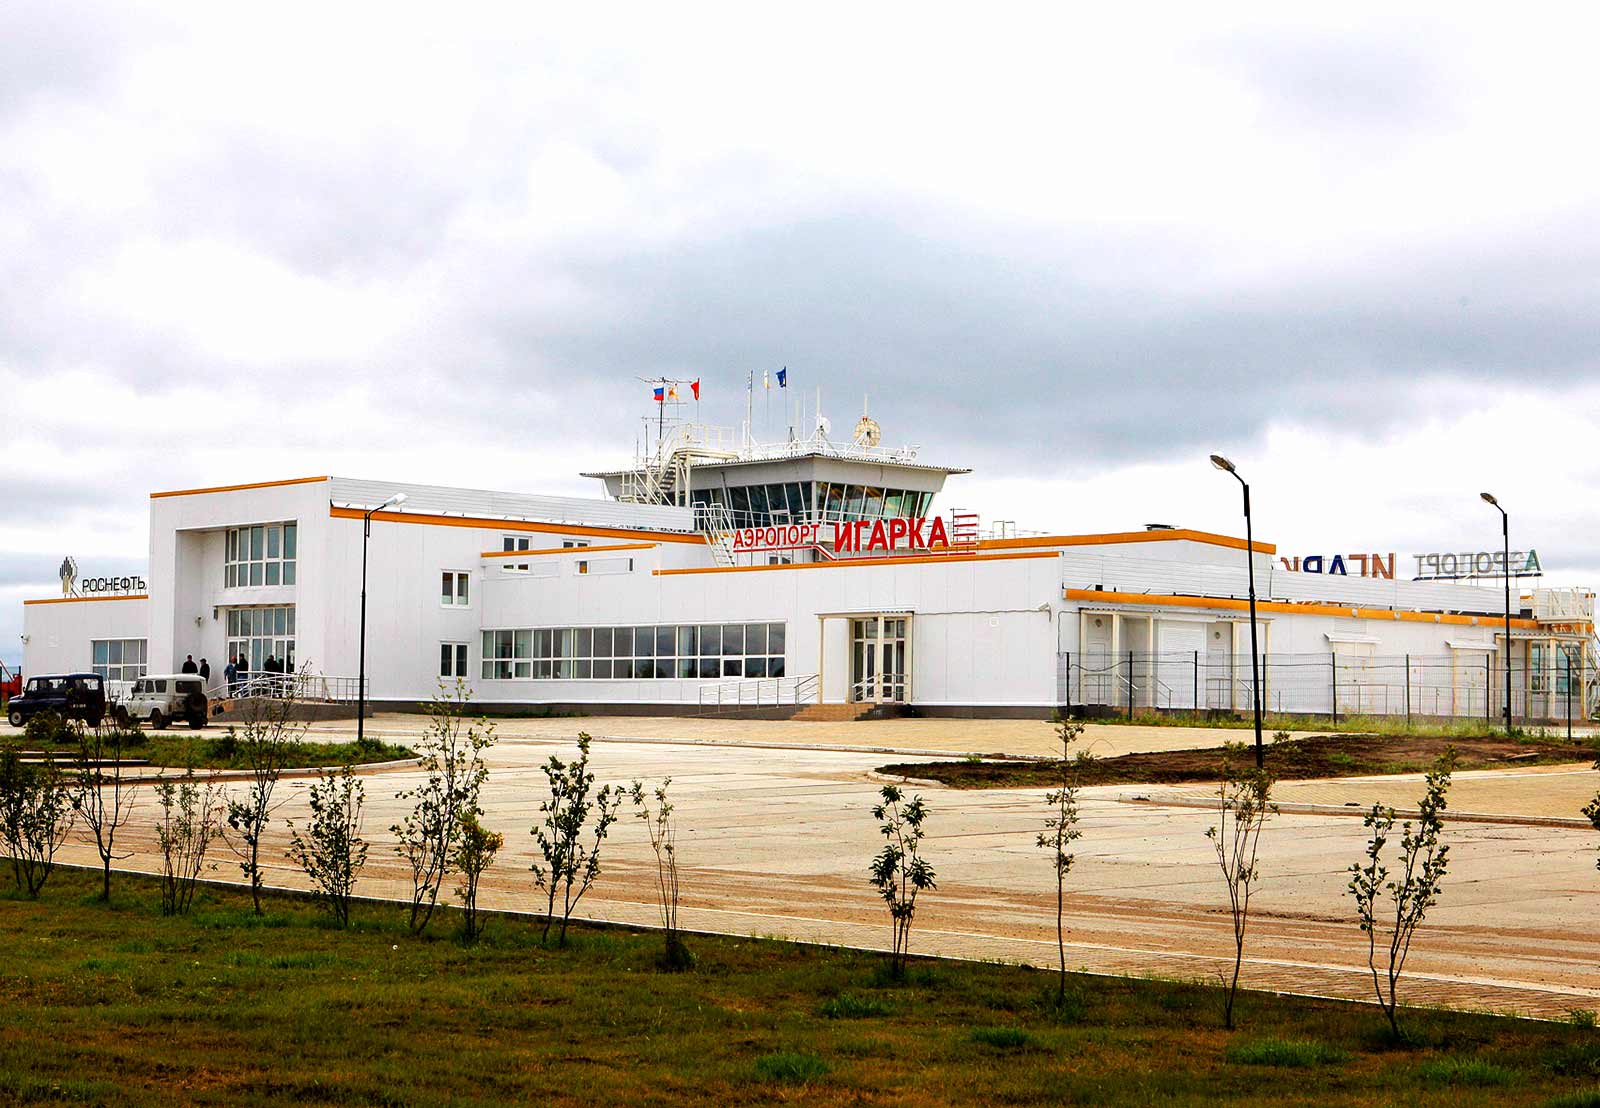 Аэропорт игарка (igarka), заказ авиабилетов